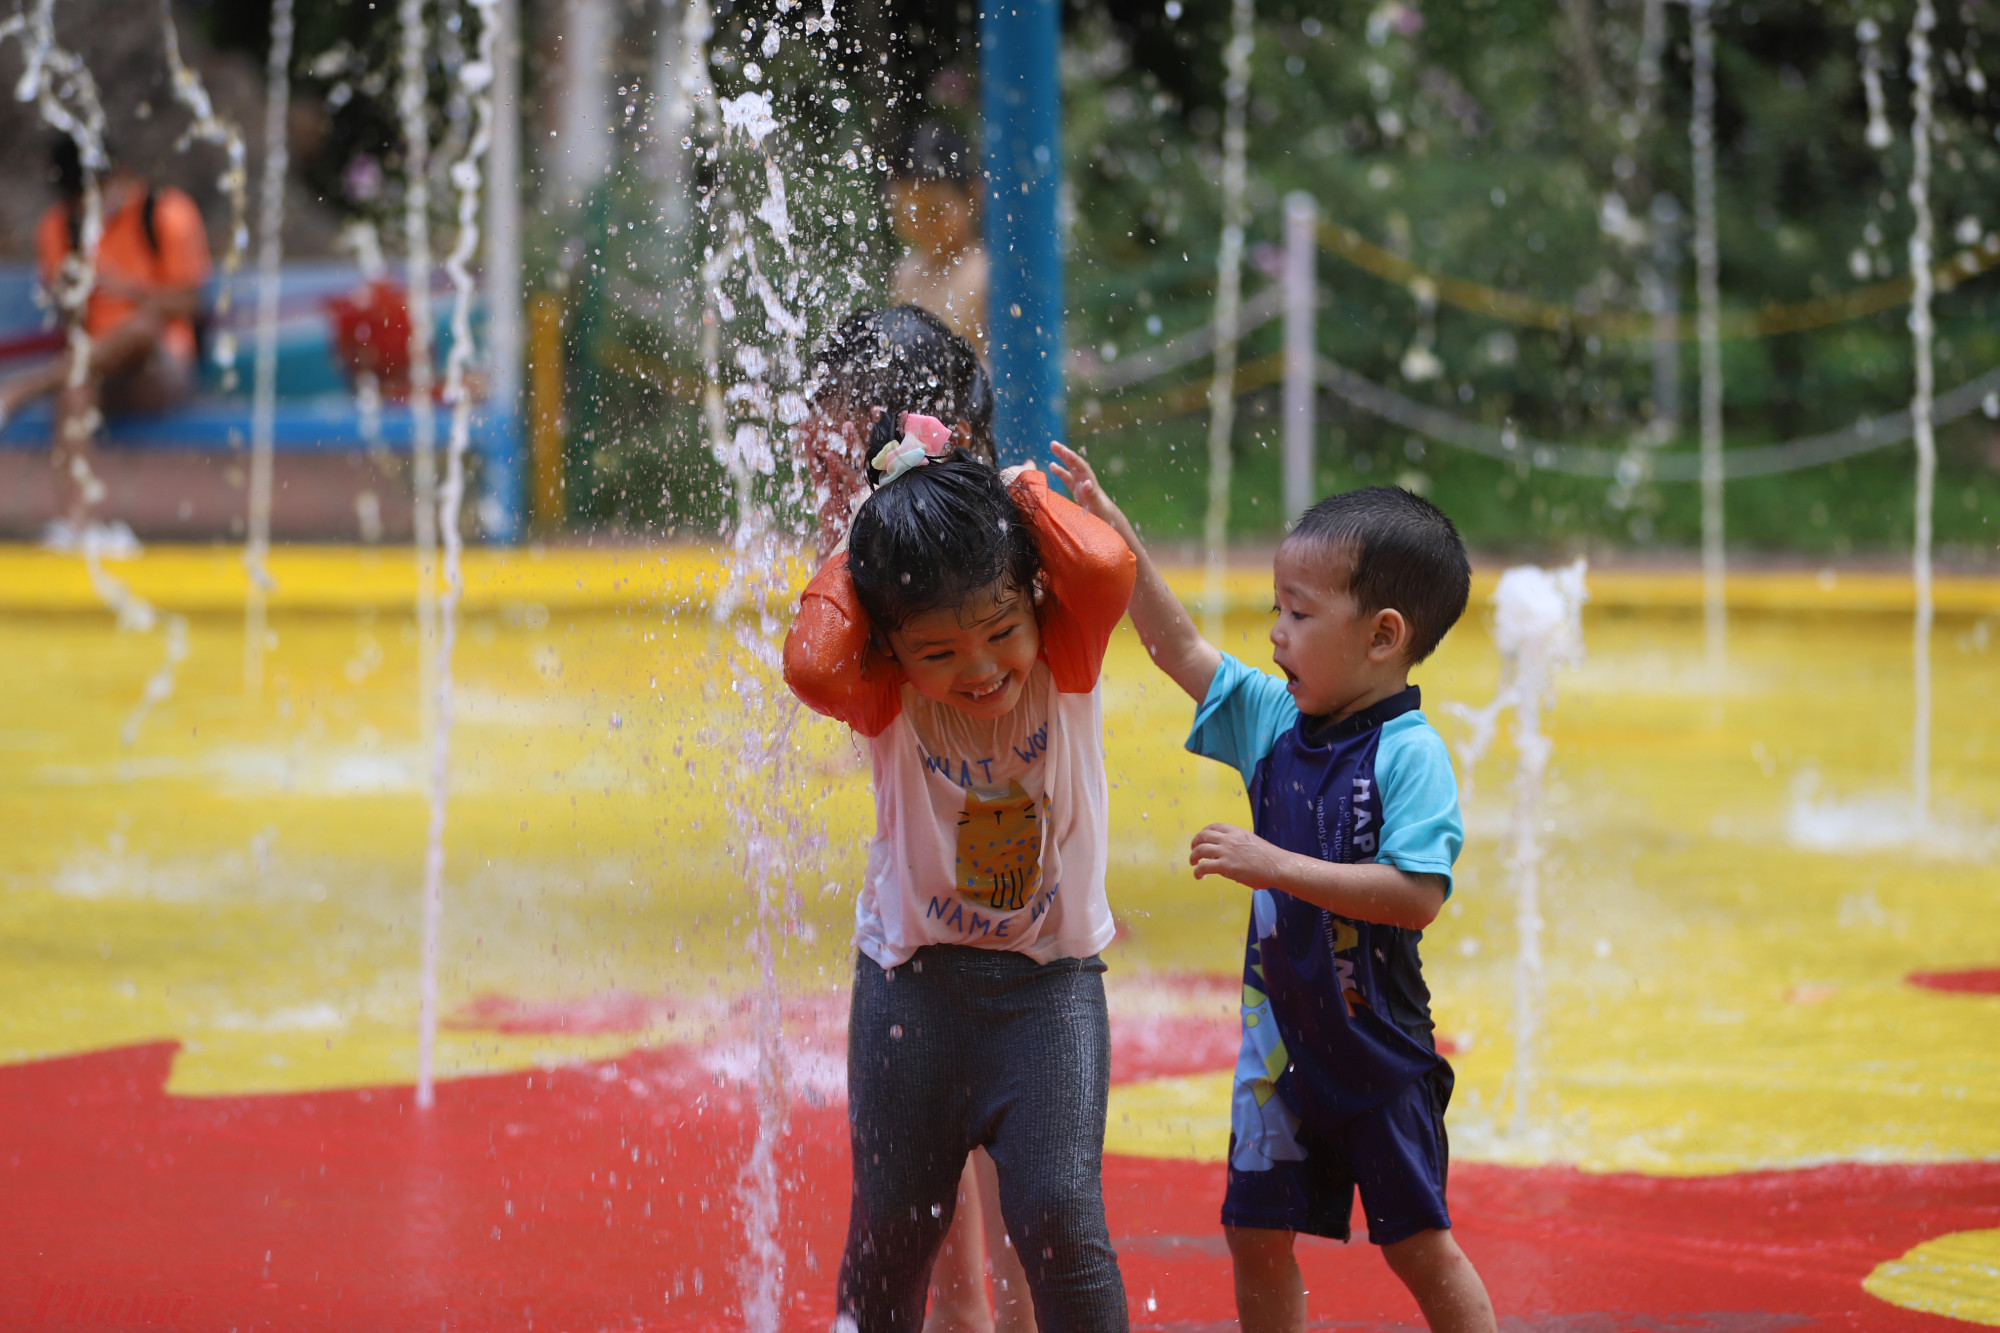 Thời tiết khá nóng, nhiều em nhỏ lựa chọn vui chơi tại khu vực công viên nước.